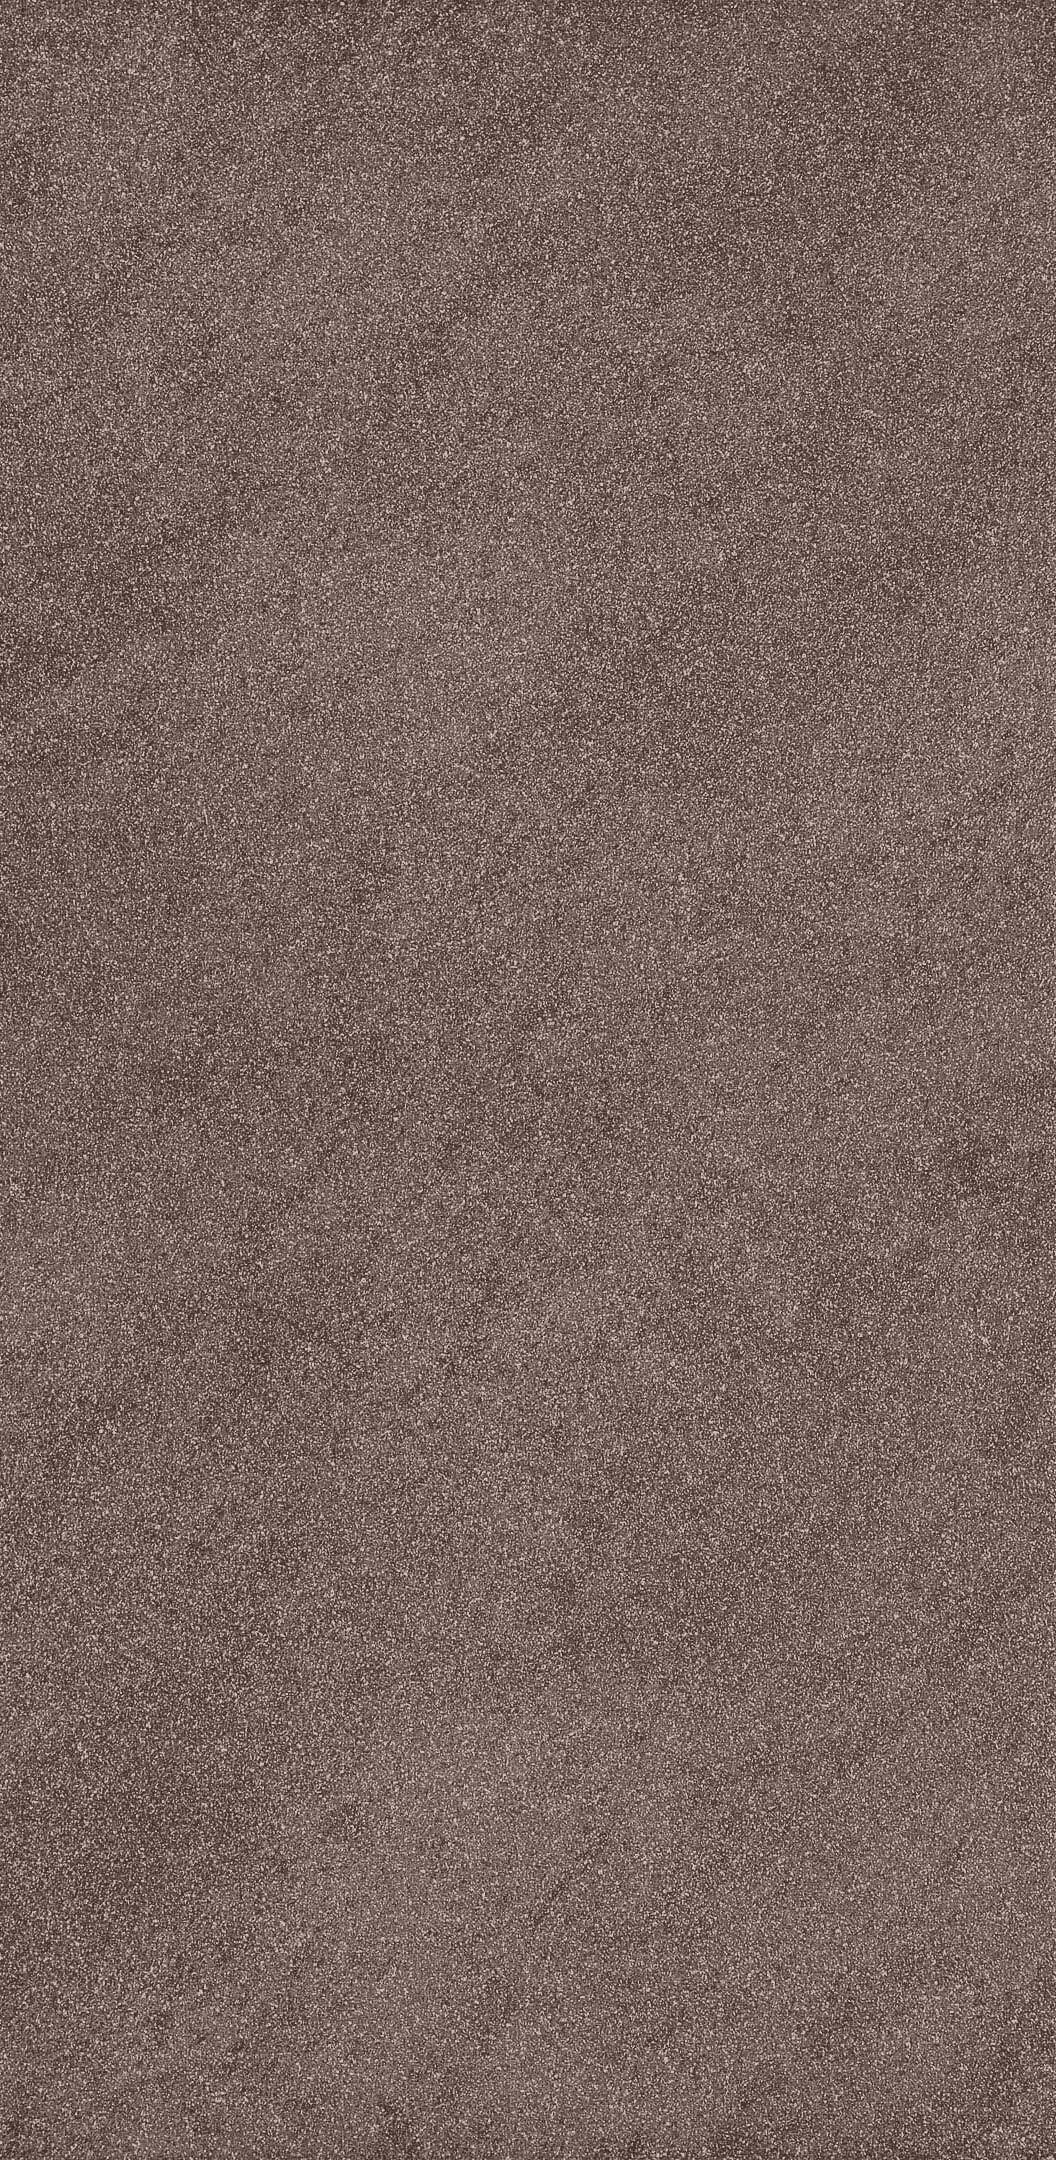 Керамогранит Cersanit Orion коричневый матовый 598х297х7,5 мм (10 шт.=1,77 кв.м) керамогранит cersanit orion коричневый